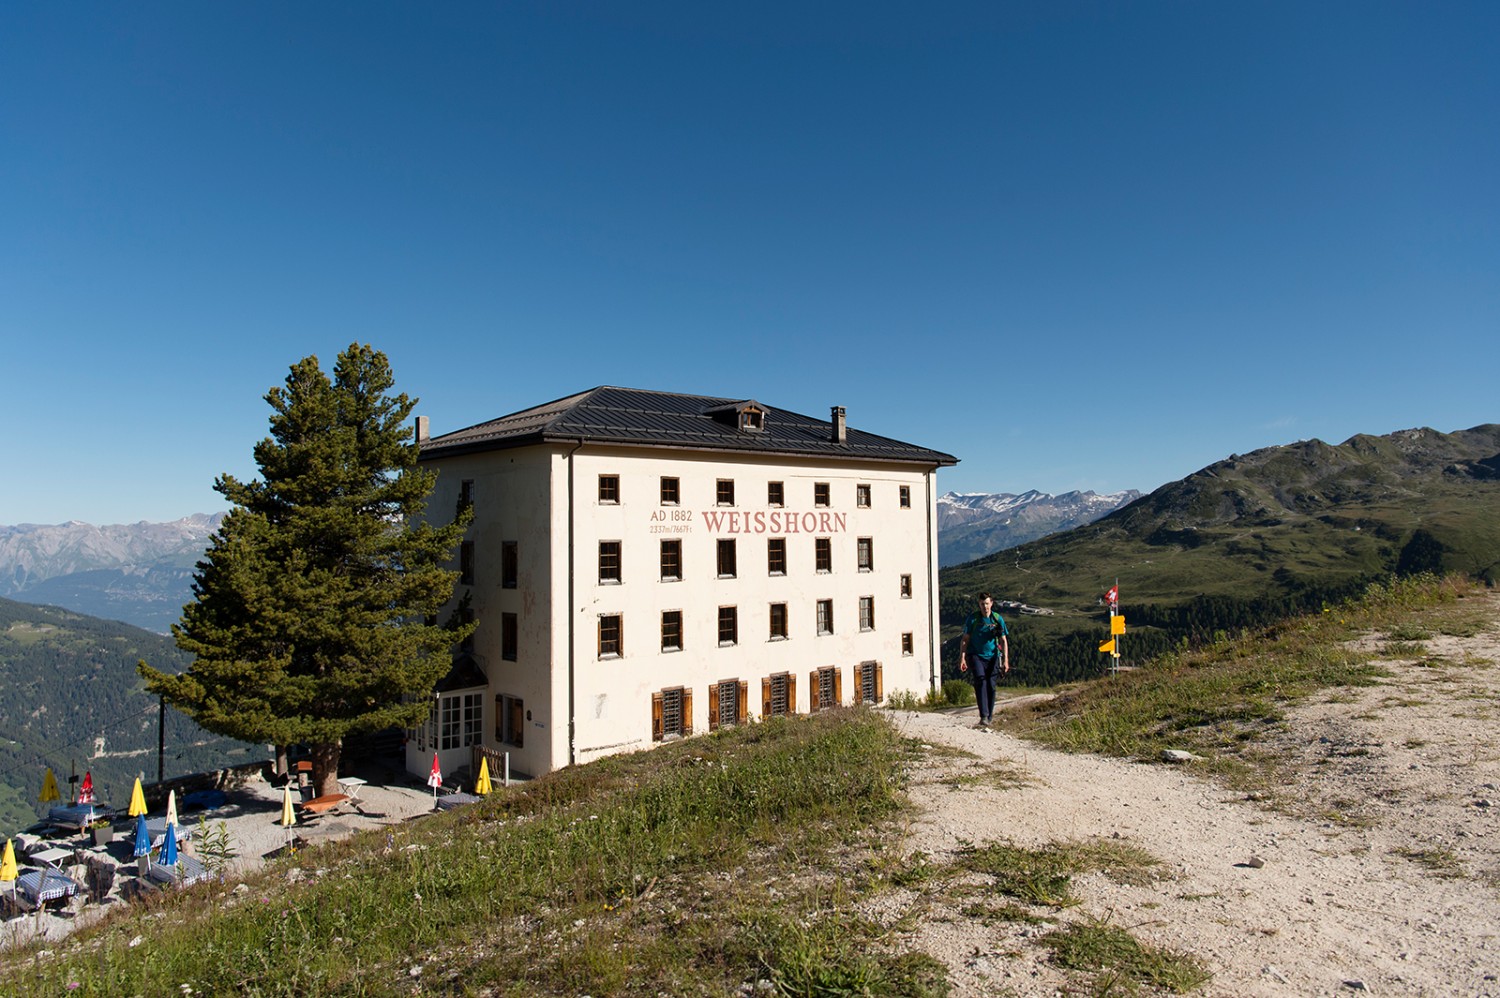 Eine Übernachtung im Hotel Weisshorn auf über 2300 Metern ist ein besonderes Erlebnis.